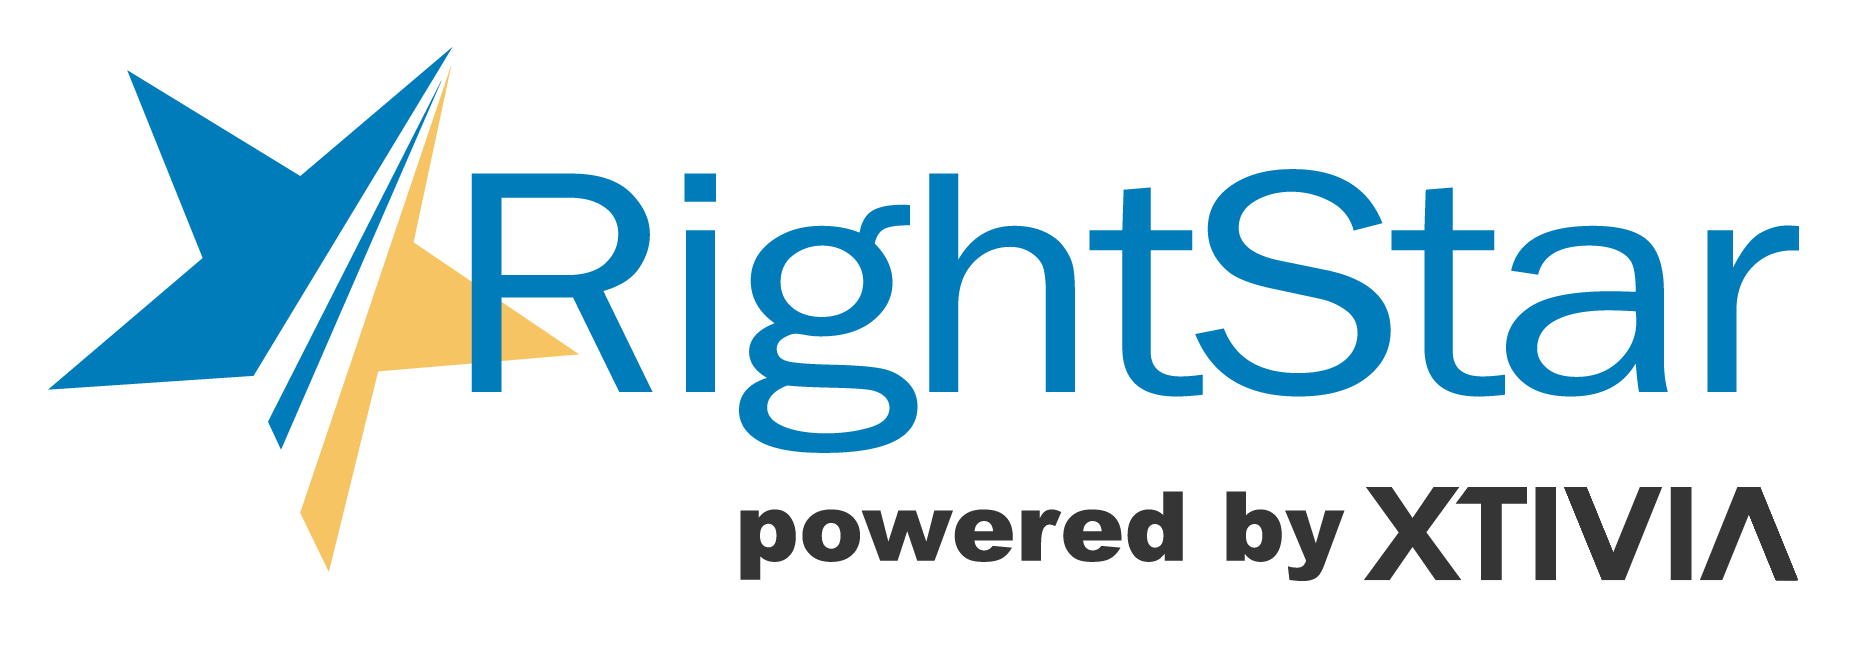 Logo RightStar